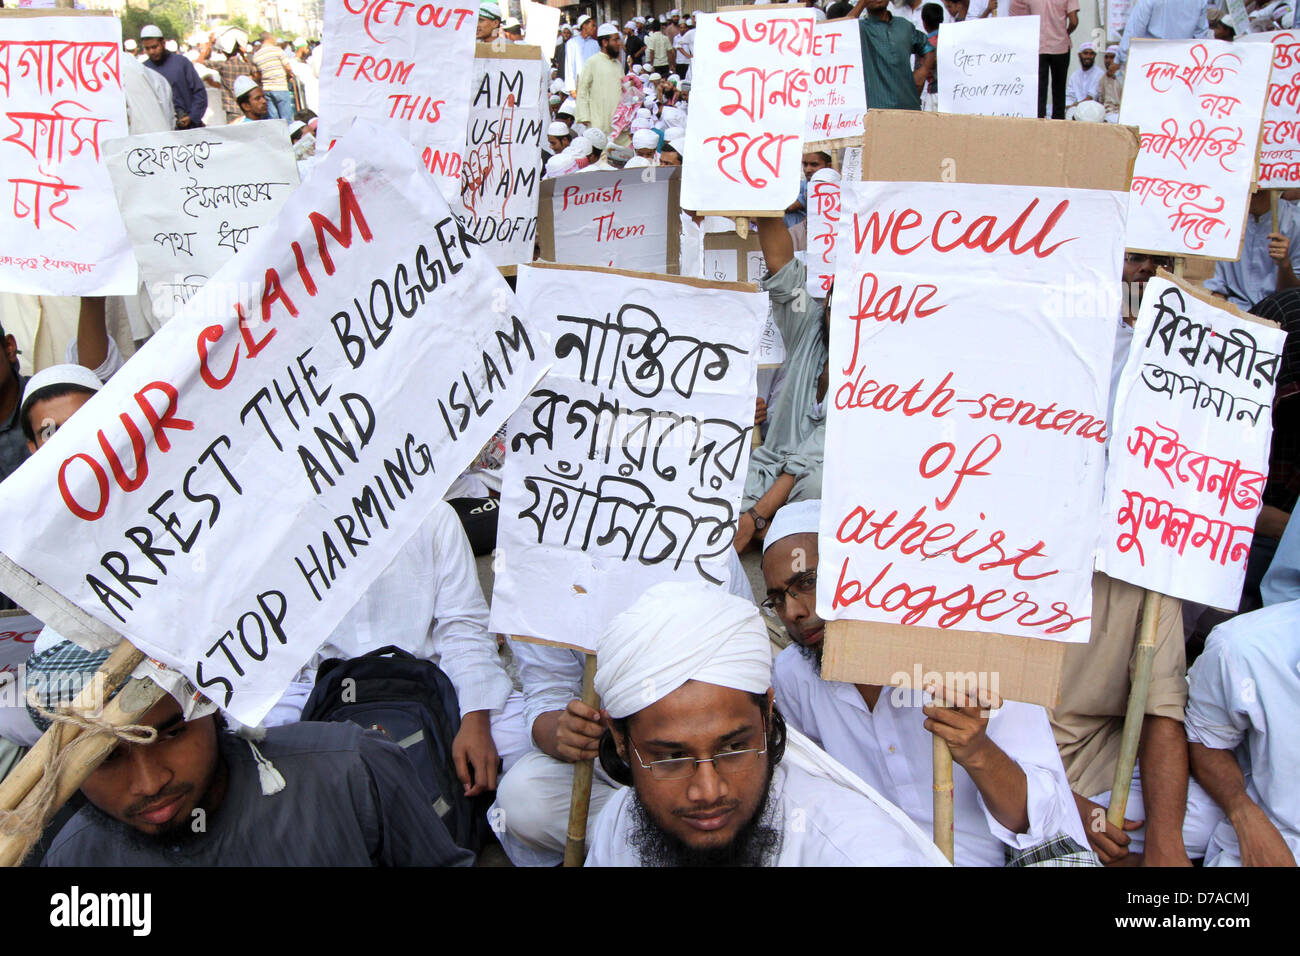 Bangladesh-e-Islam Hefajat activistas llevan pancartas durante una manifestación en Dhaka el 6 de abril de 2013. Foto de stock